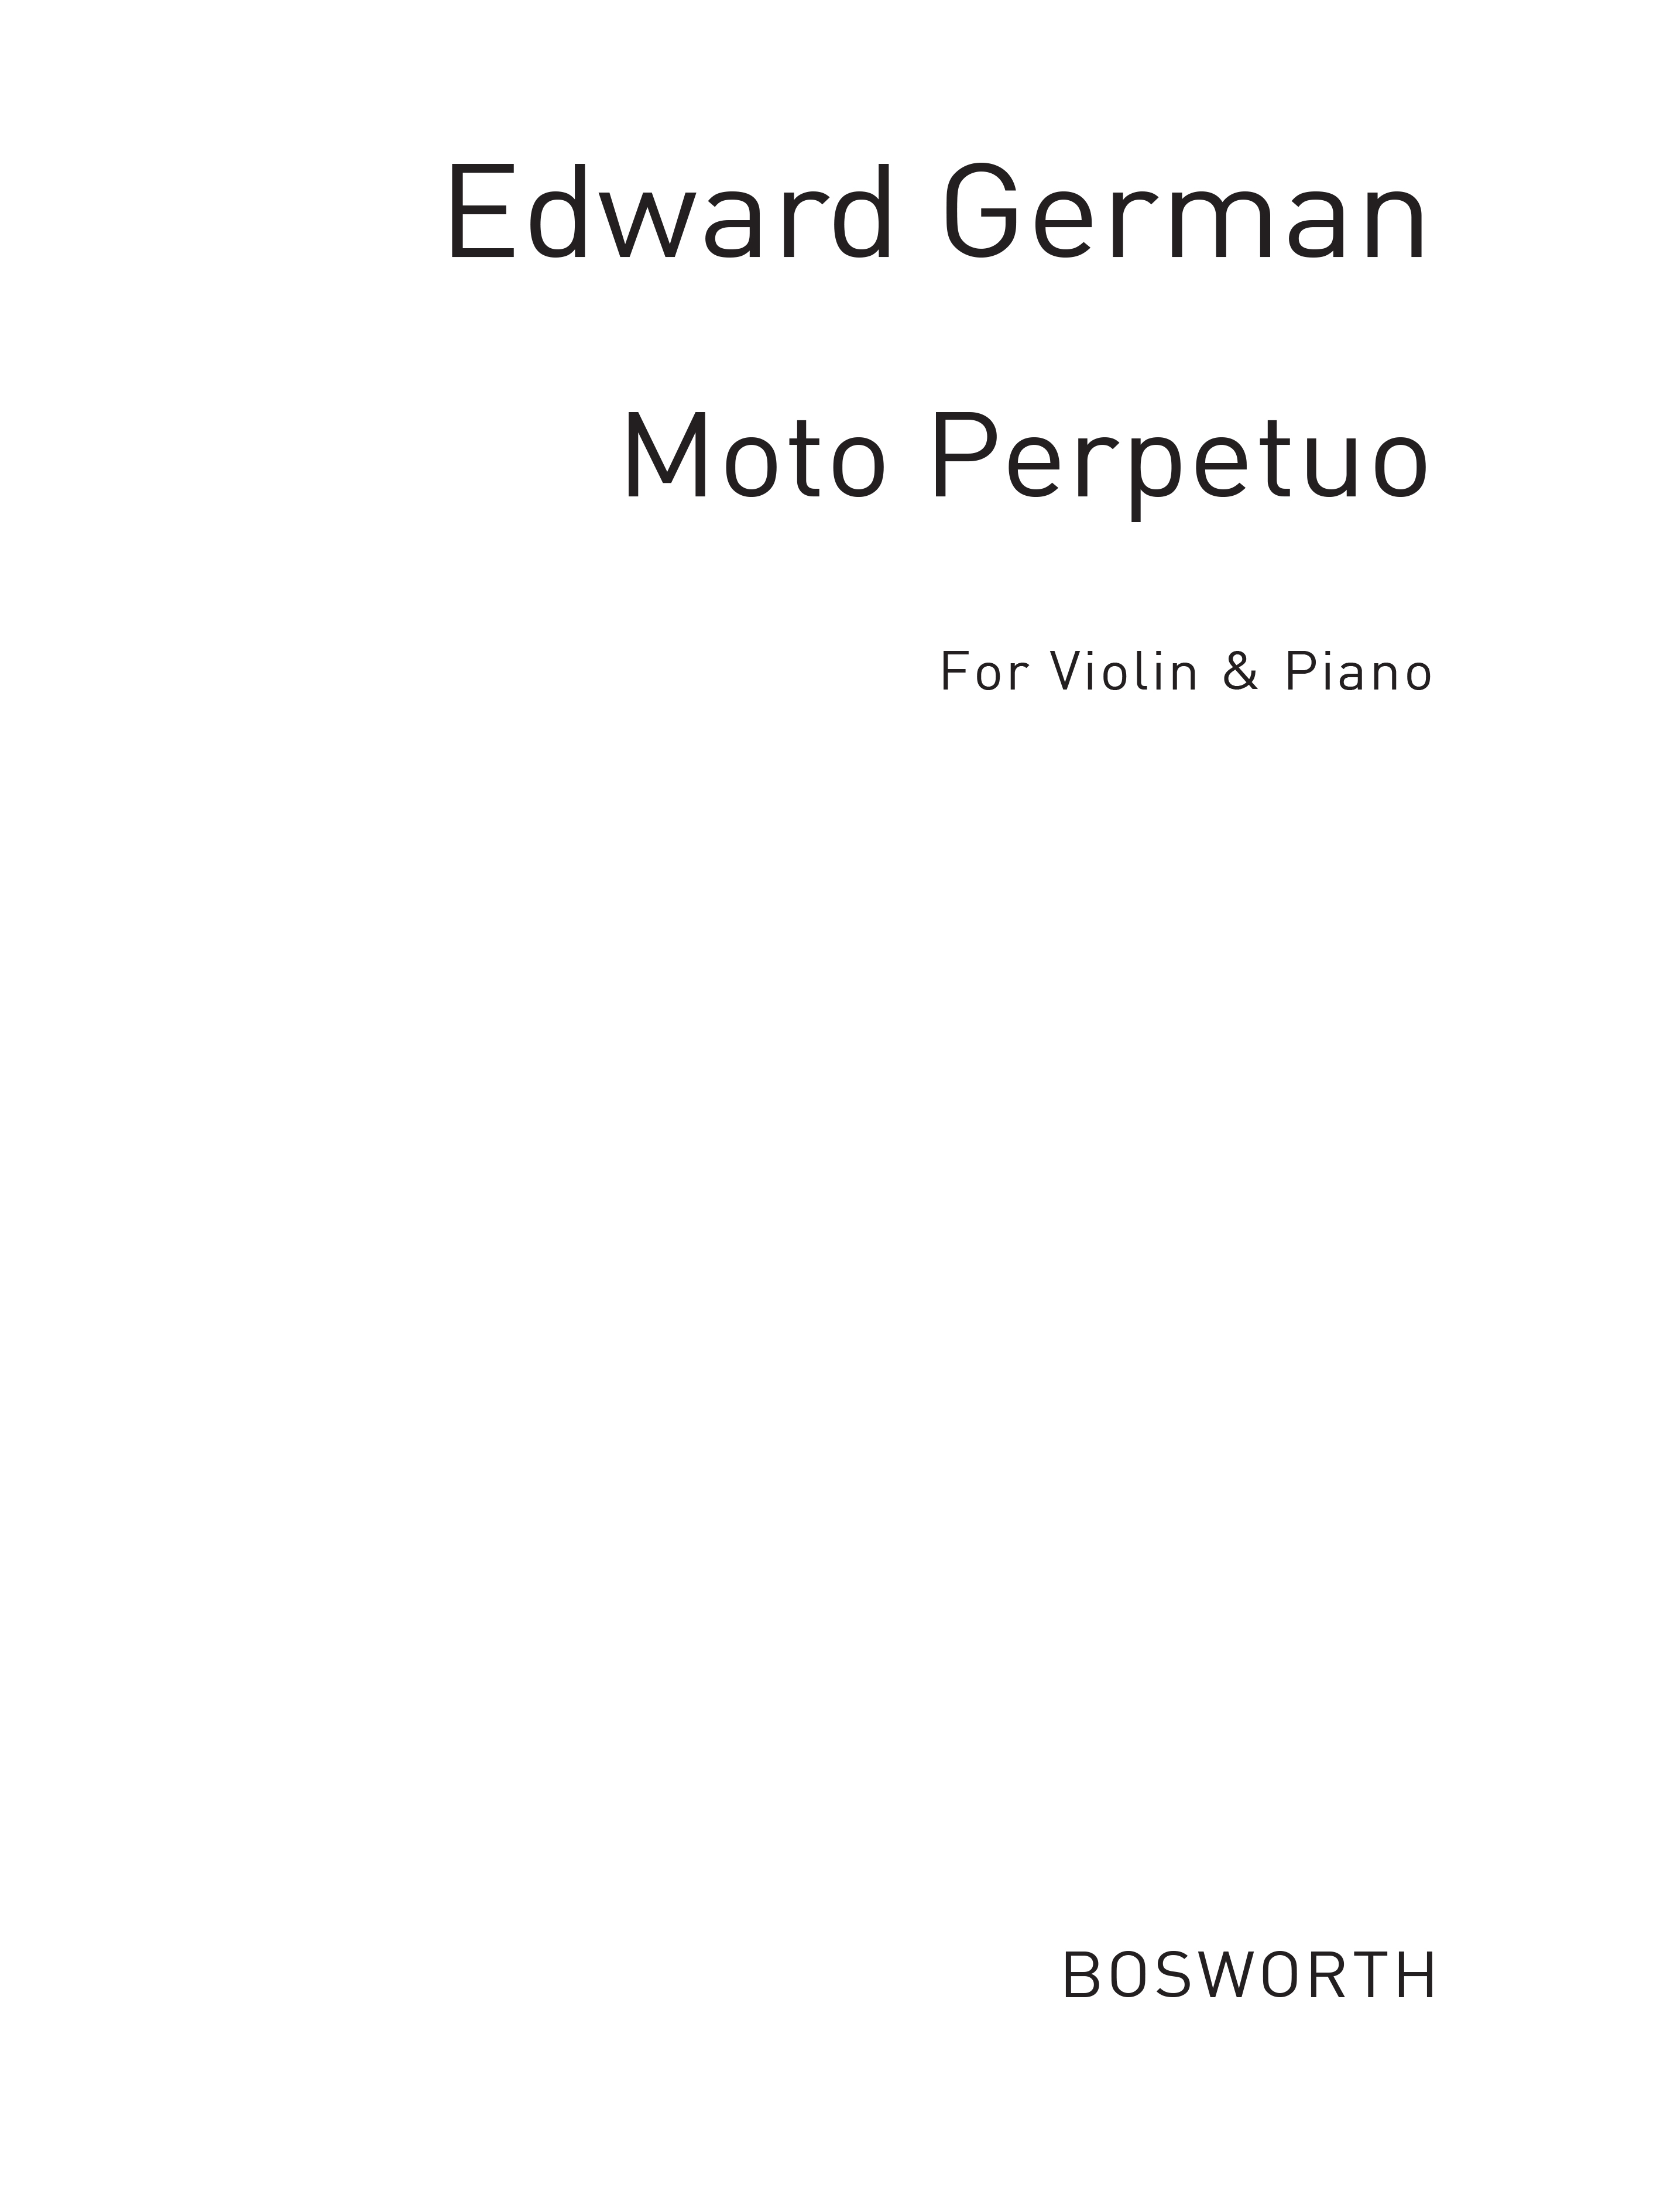 Edward German: Edward German: Moto Perpetuo For Violin And Piano: Violin: